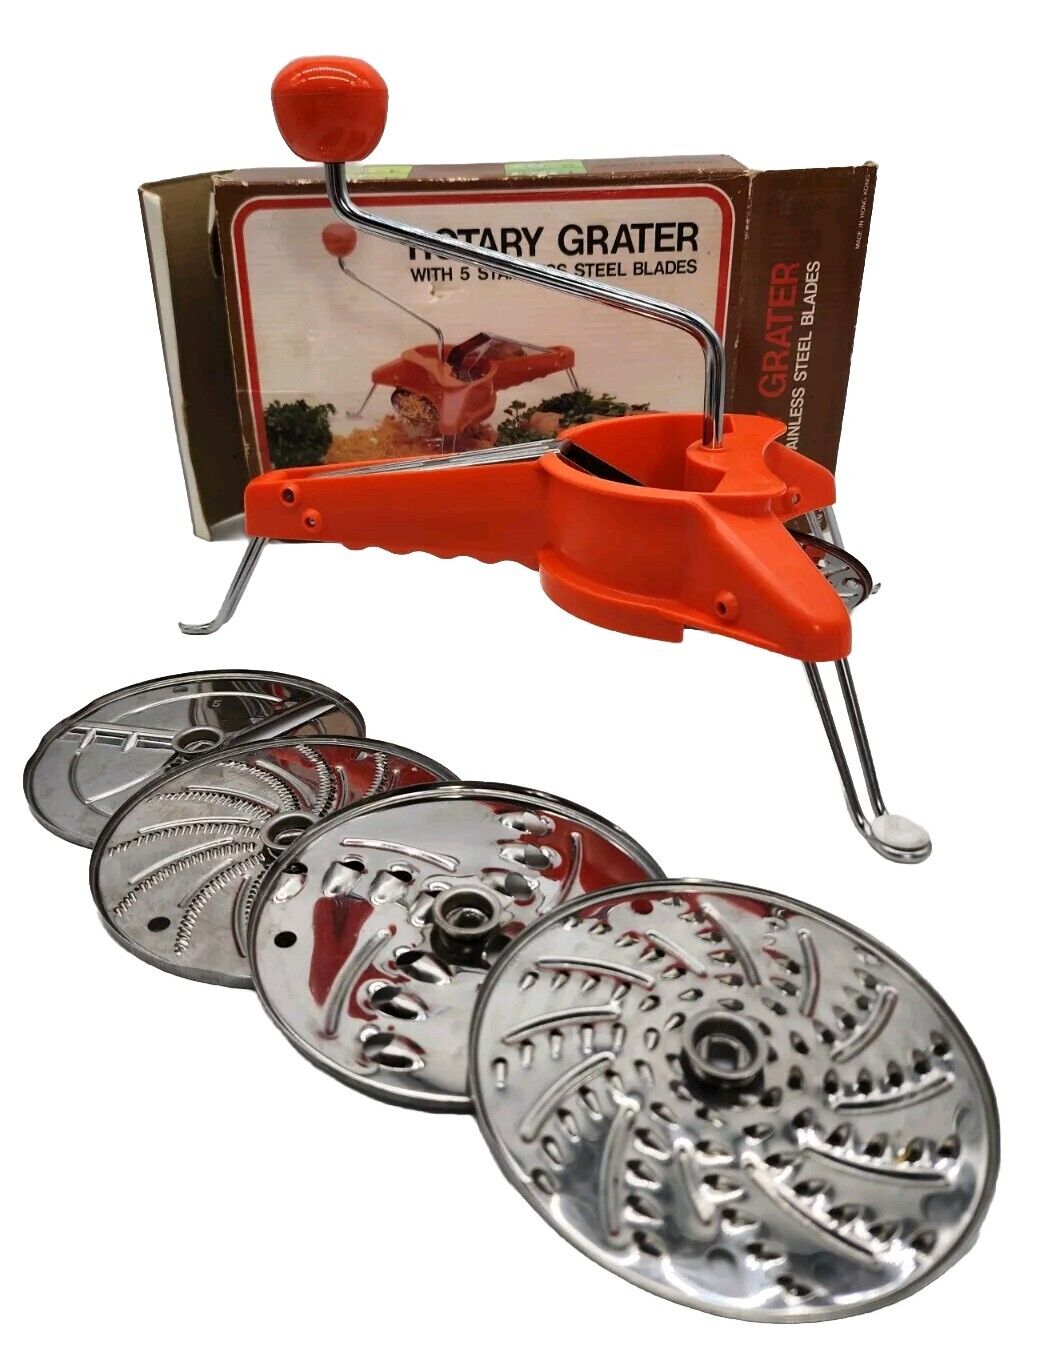 Vtg Mouli Style Rotary Grater Shredder Slicer 5 Stainless Blades Original Box